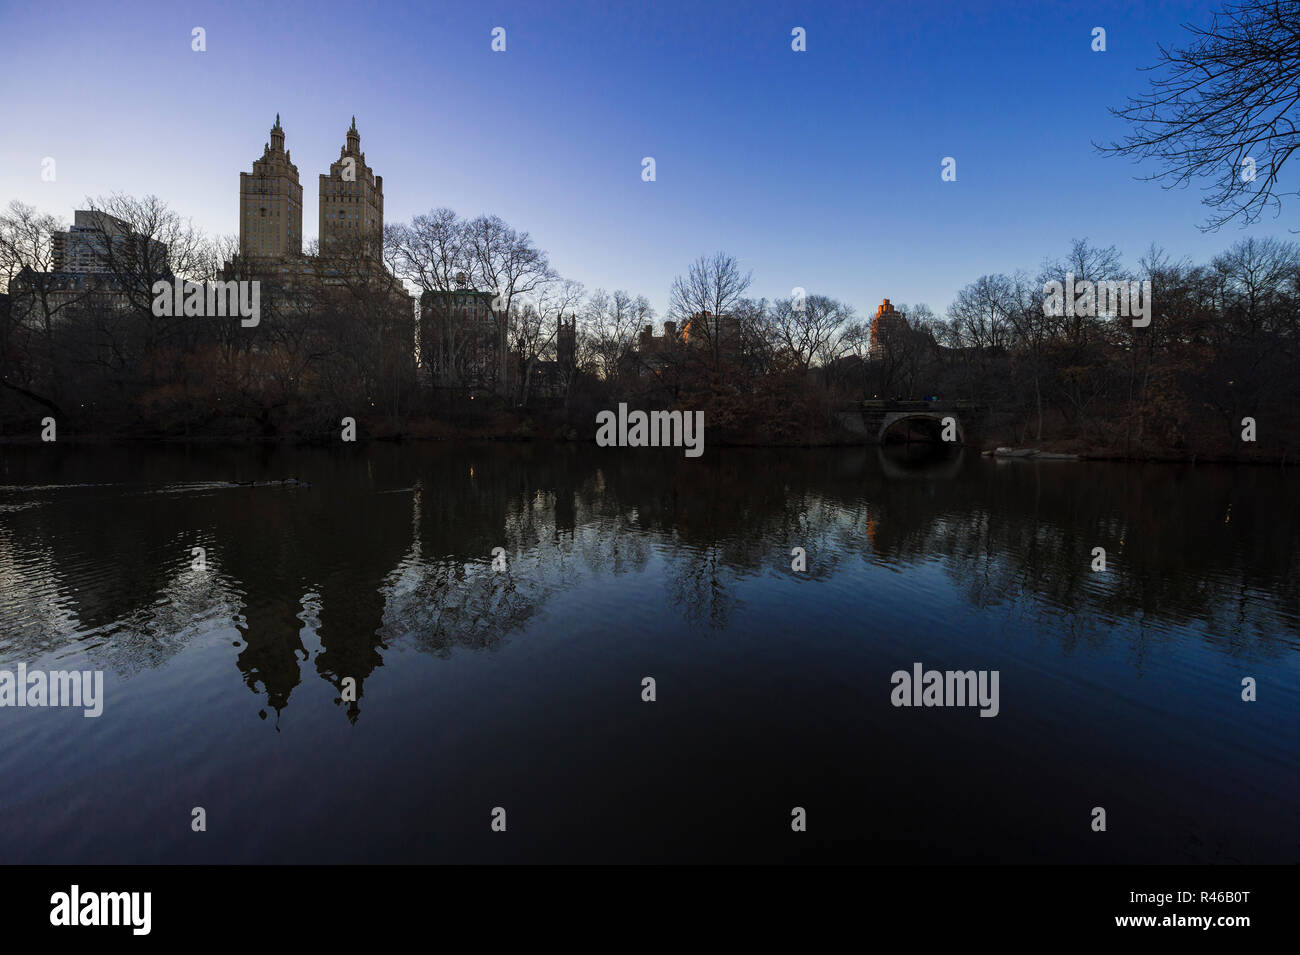 Ruhige Szene von winter bäume mit der Skyline Silhouette der Upper West Side in den ruhigen Wasser des Central Park See in New York spiegeln Stockfoto